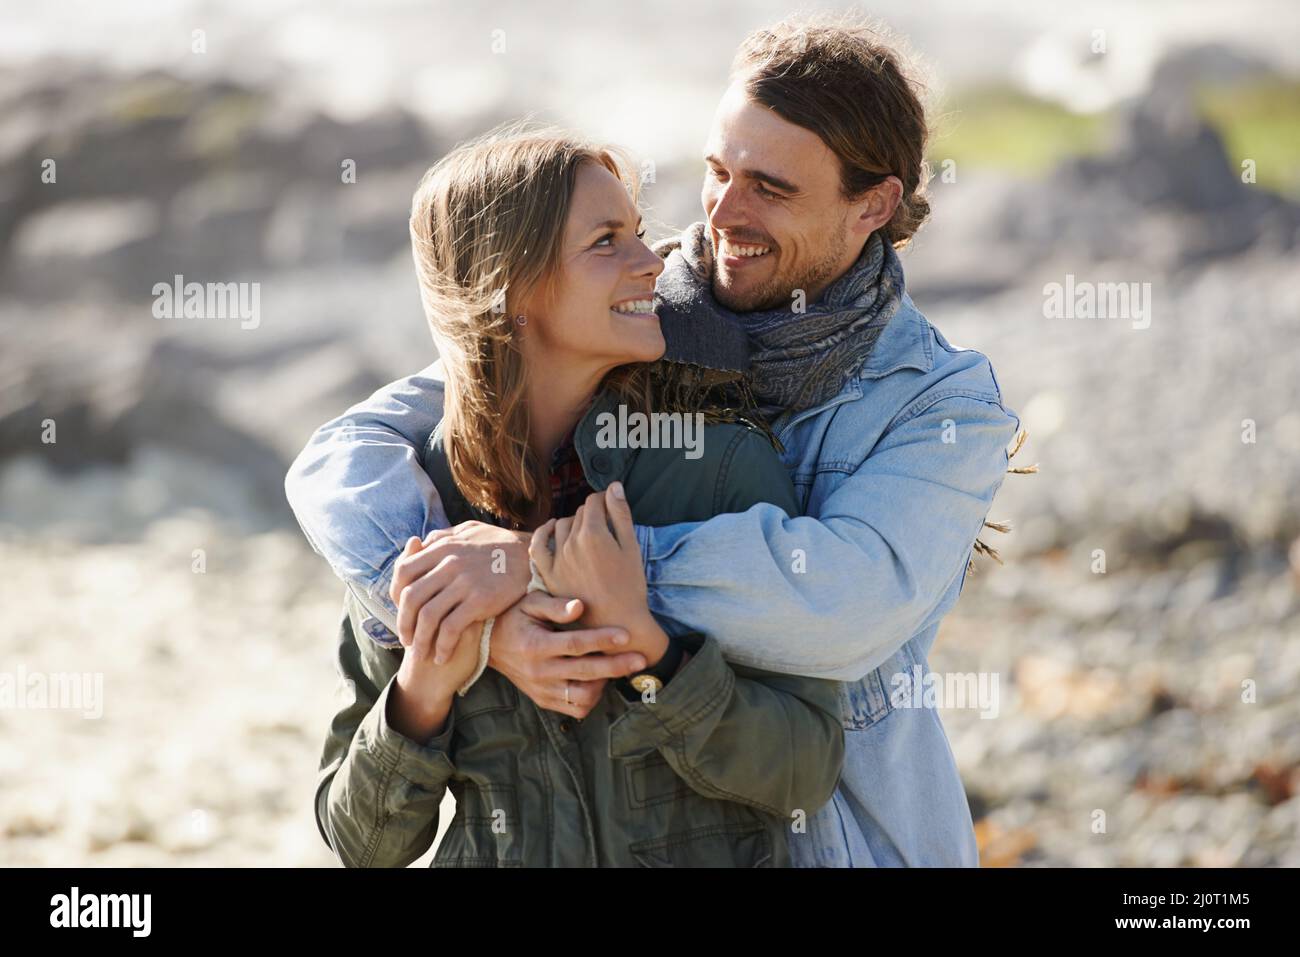 Romance décontractée. Photo d'un jeune couple affectueux qui passe du temps ensemble en plein air. Banque D'Images